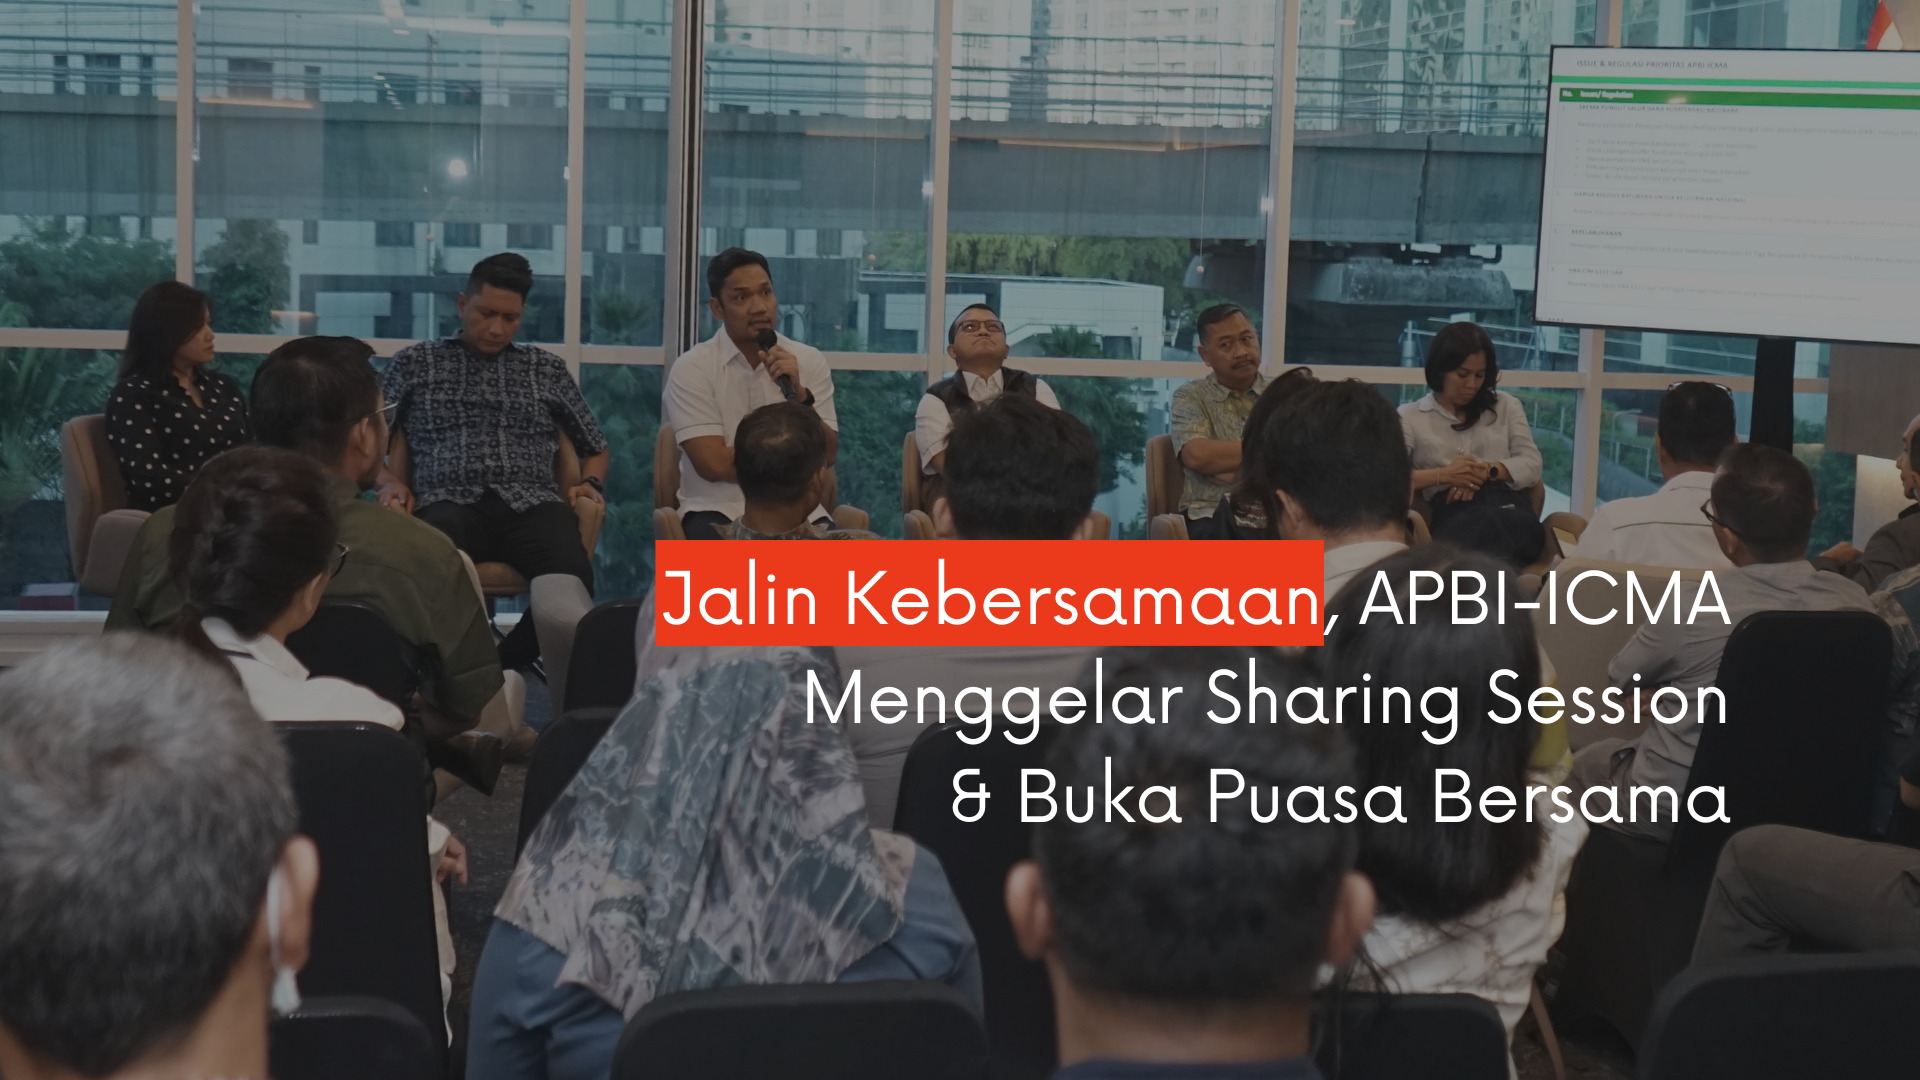 Jalin Kebersamaan, APBI-ICMA  Menggelar Sharing Session  & Buka Puasa Bersama 